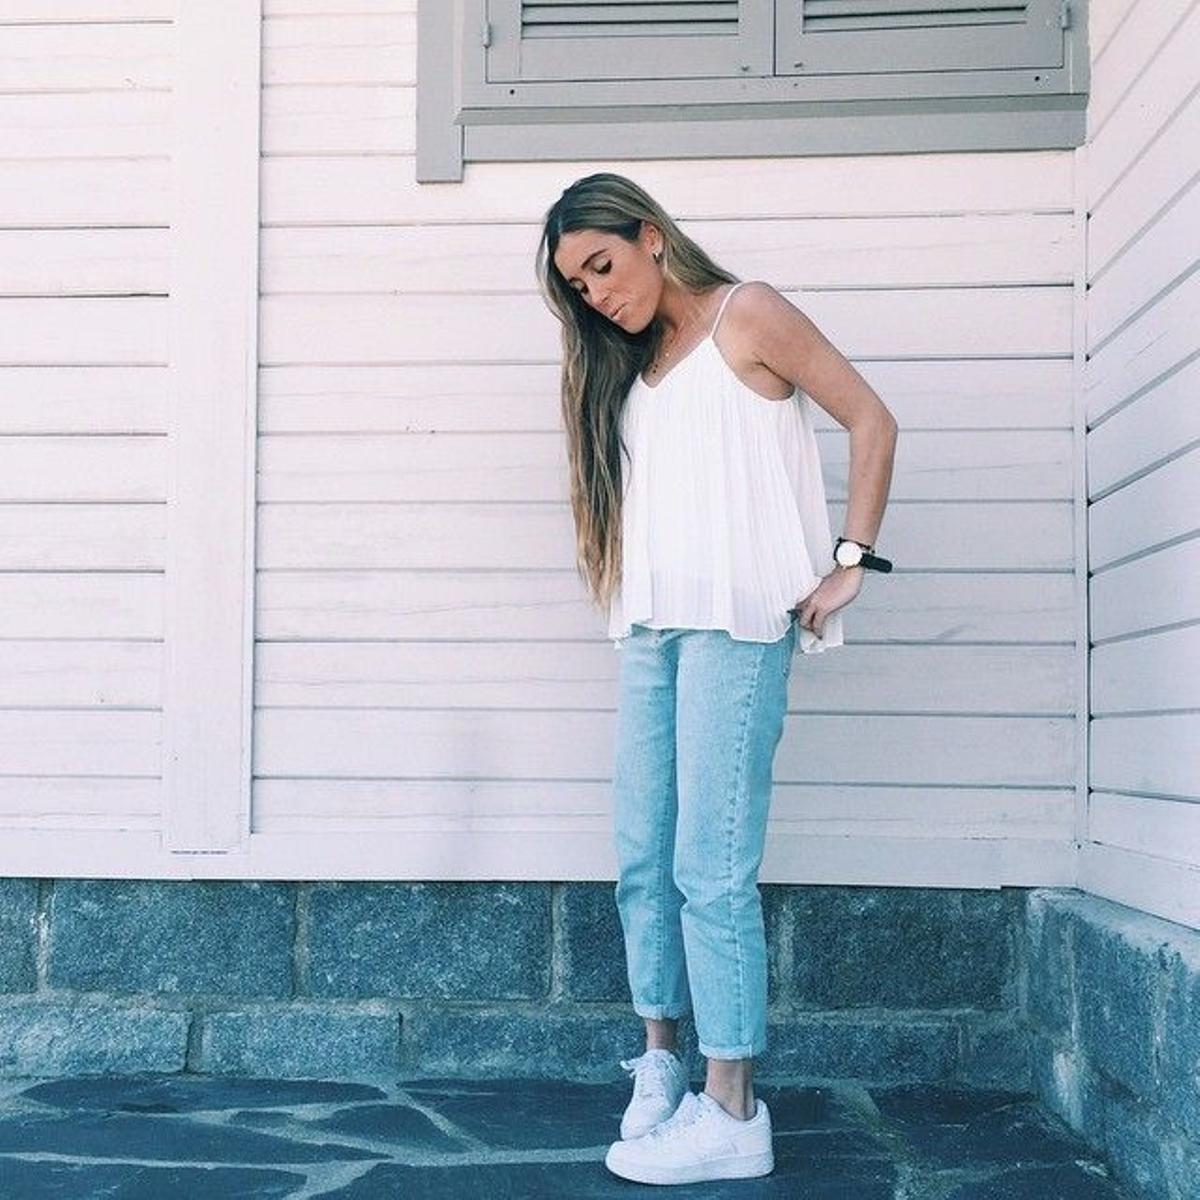 Dobladillo de pantalón en Instagram, Claudia Parras